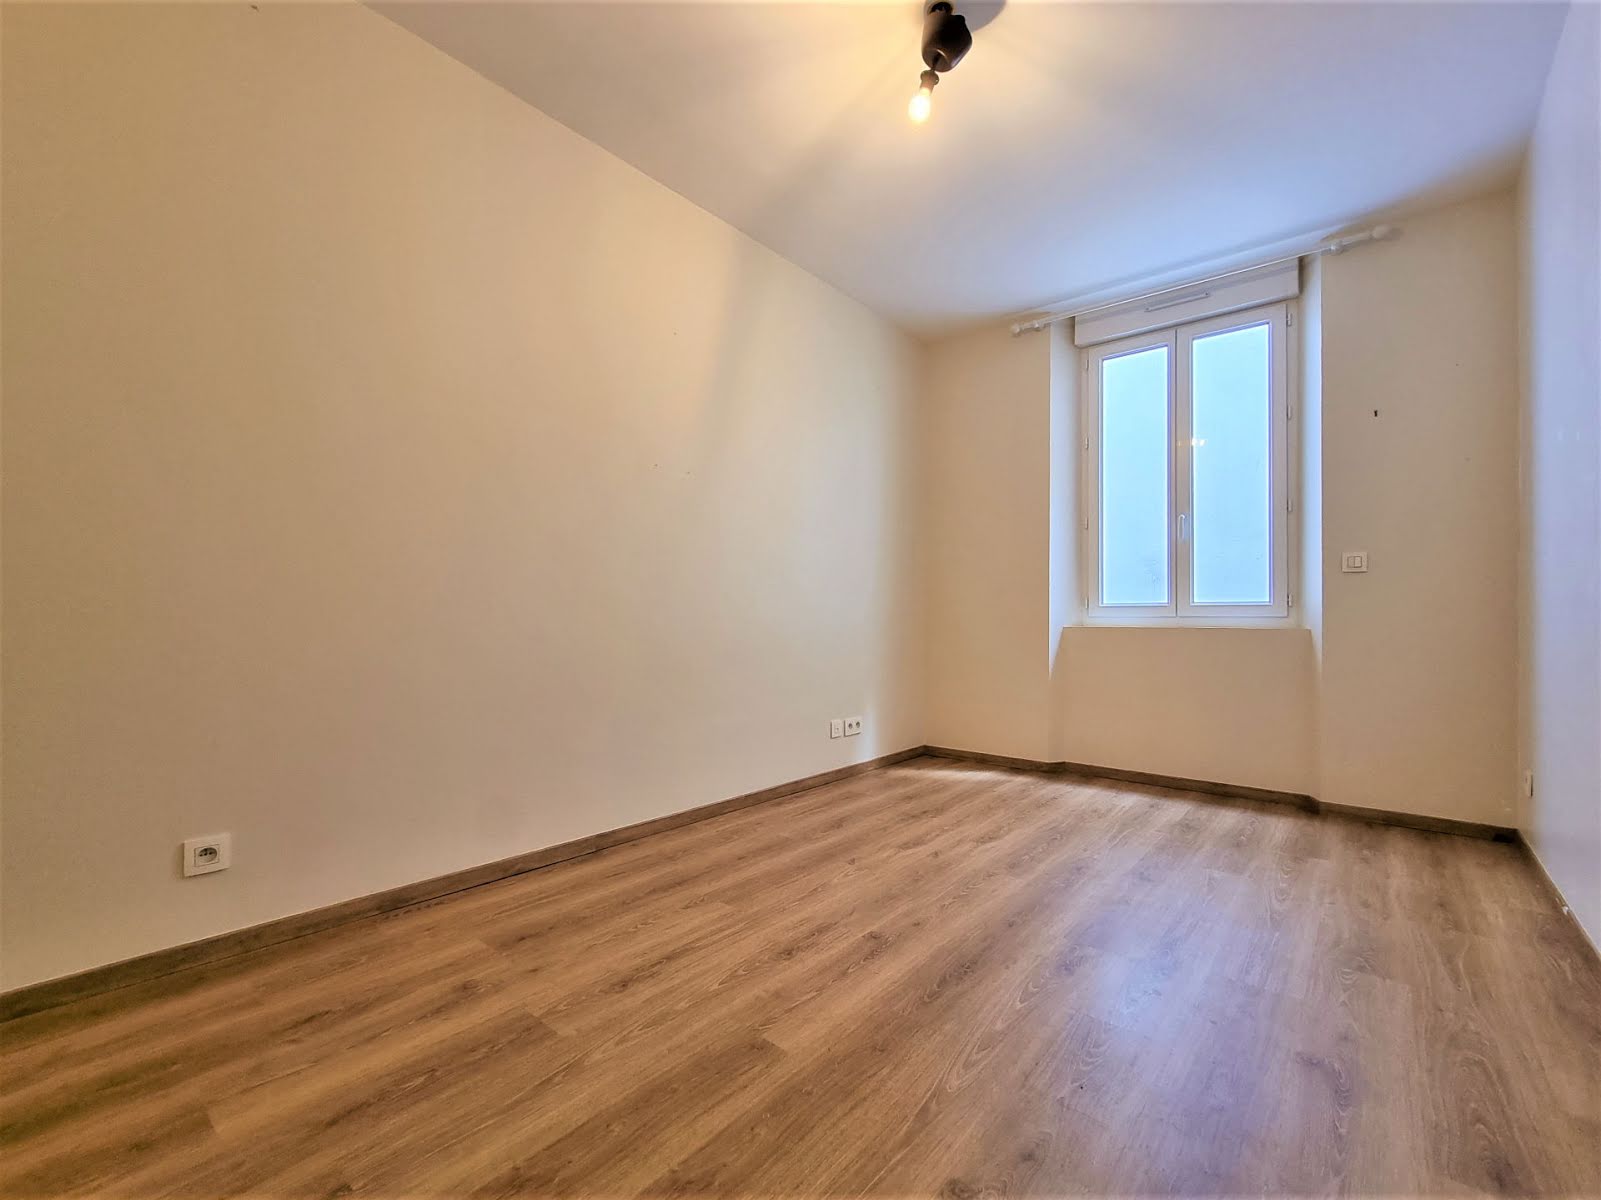 Location appartement 3 pièces 79,27 m2